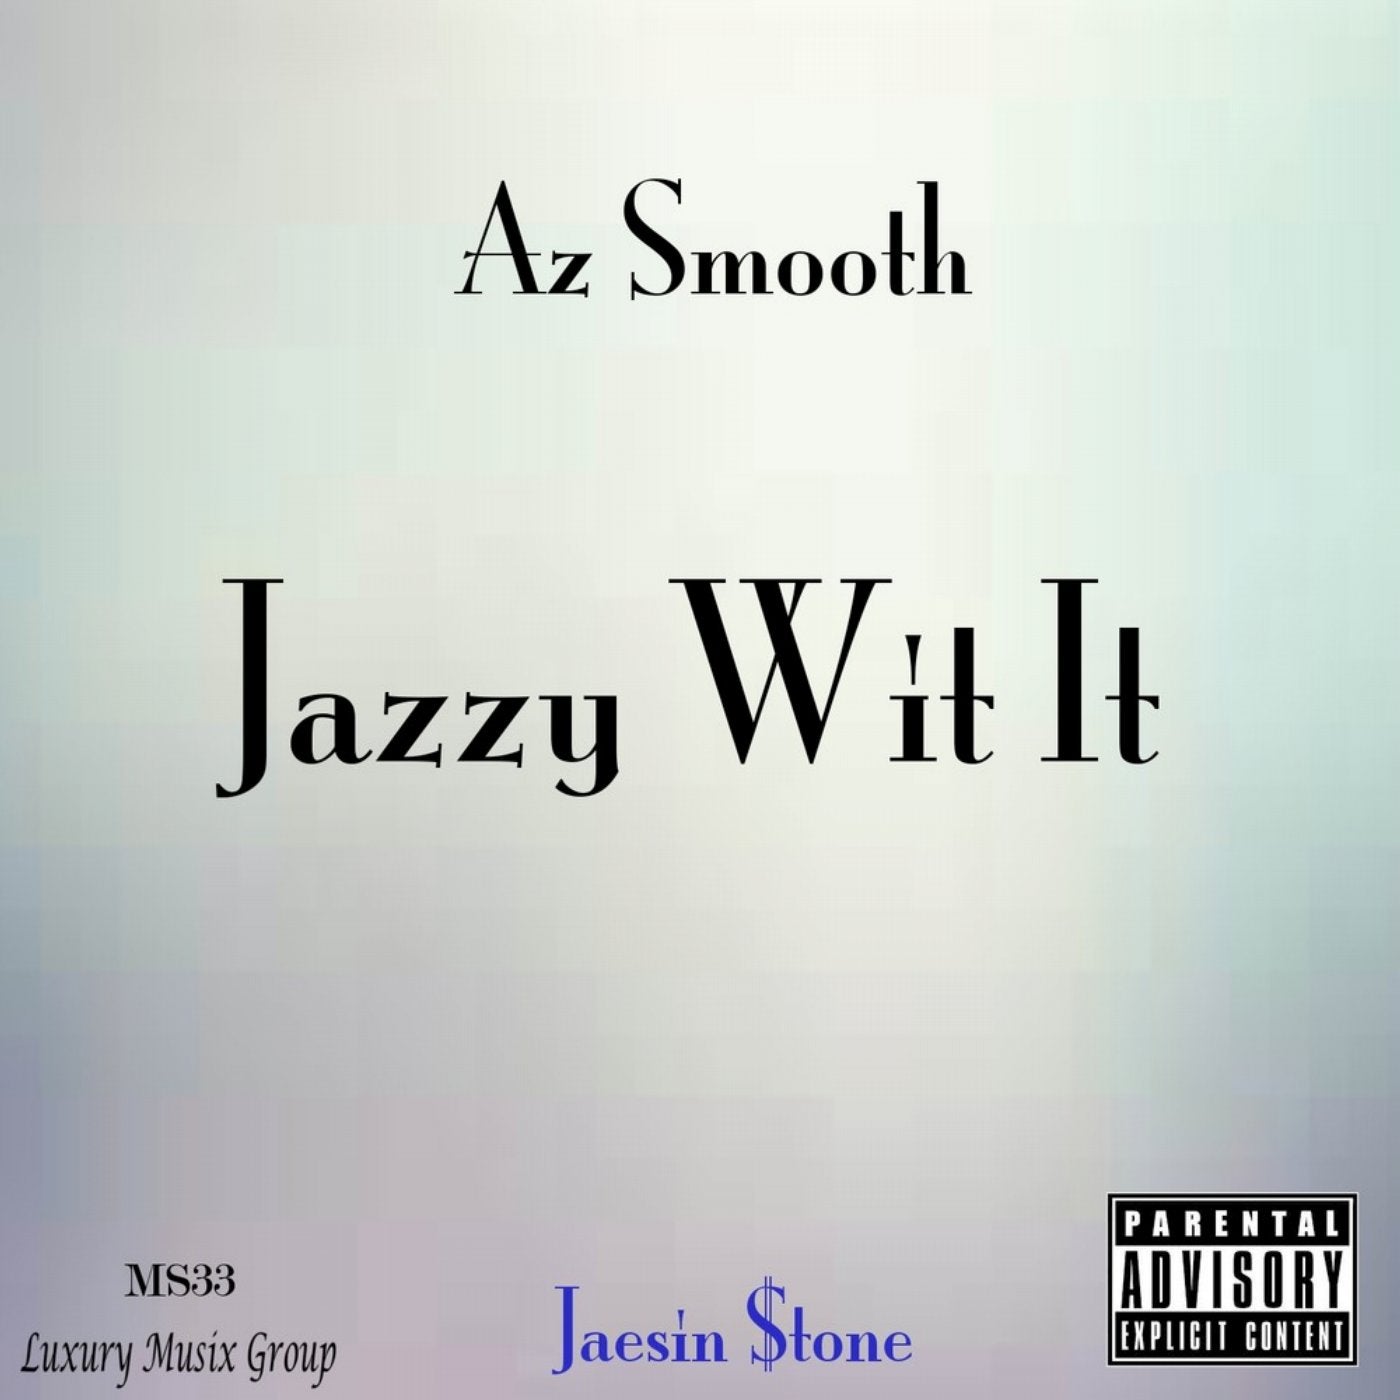 Jazzy Wit It - Single